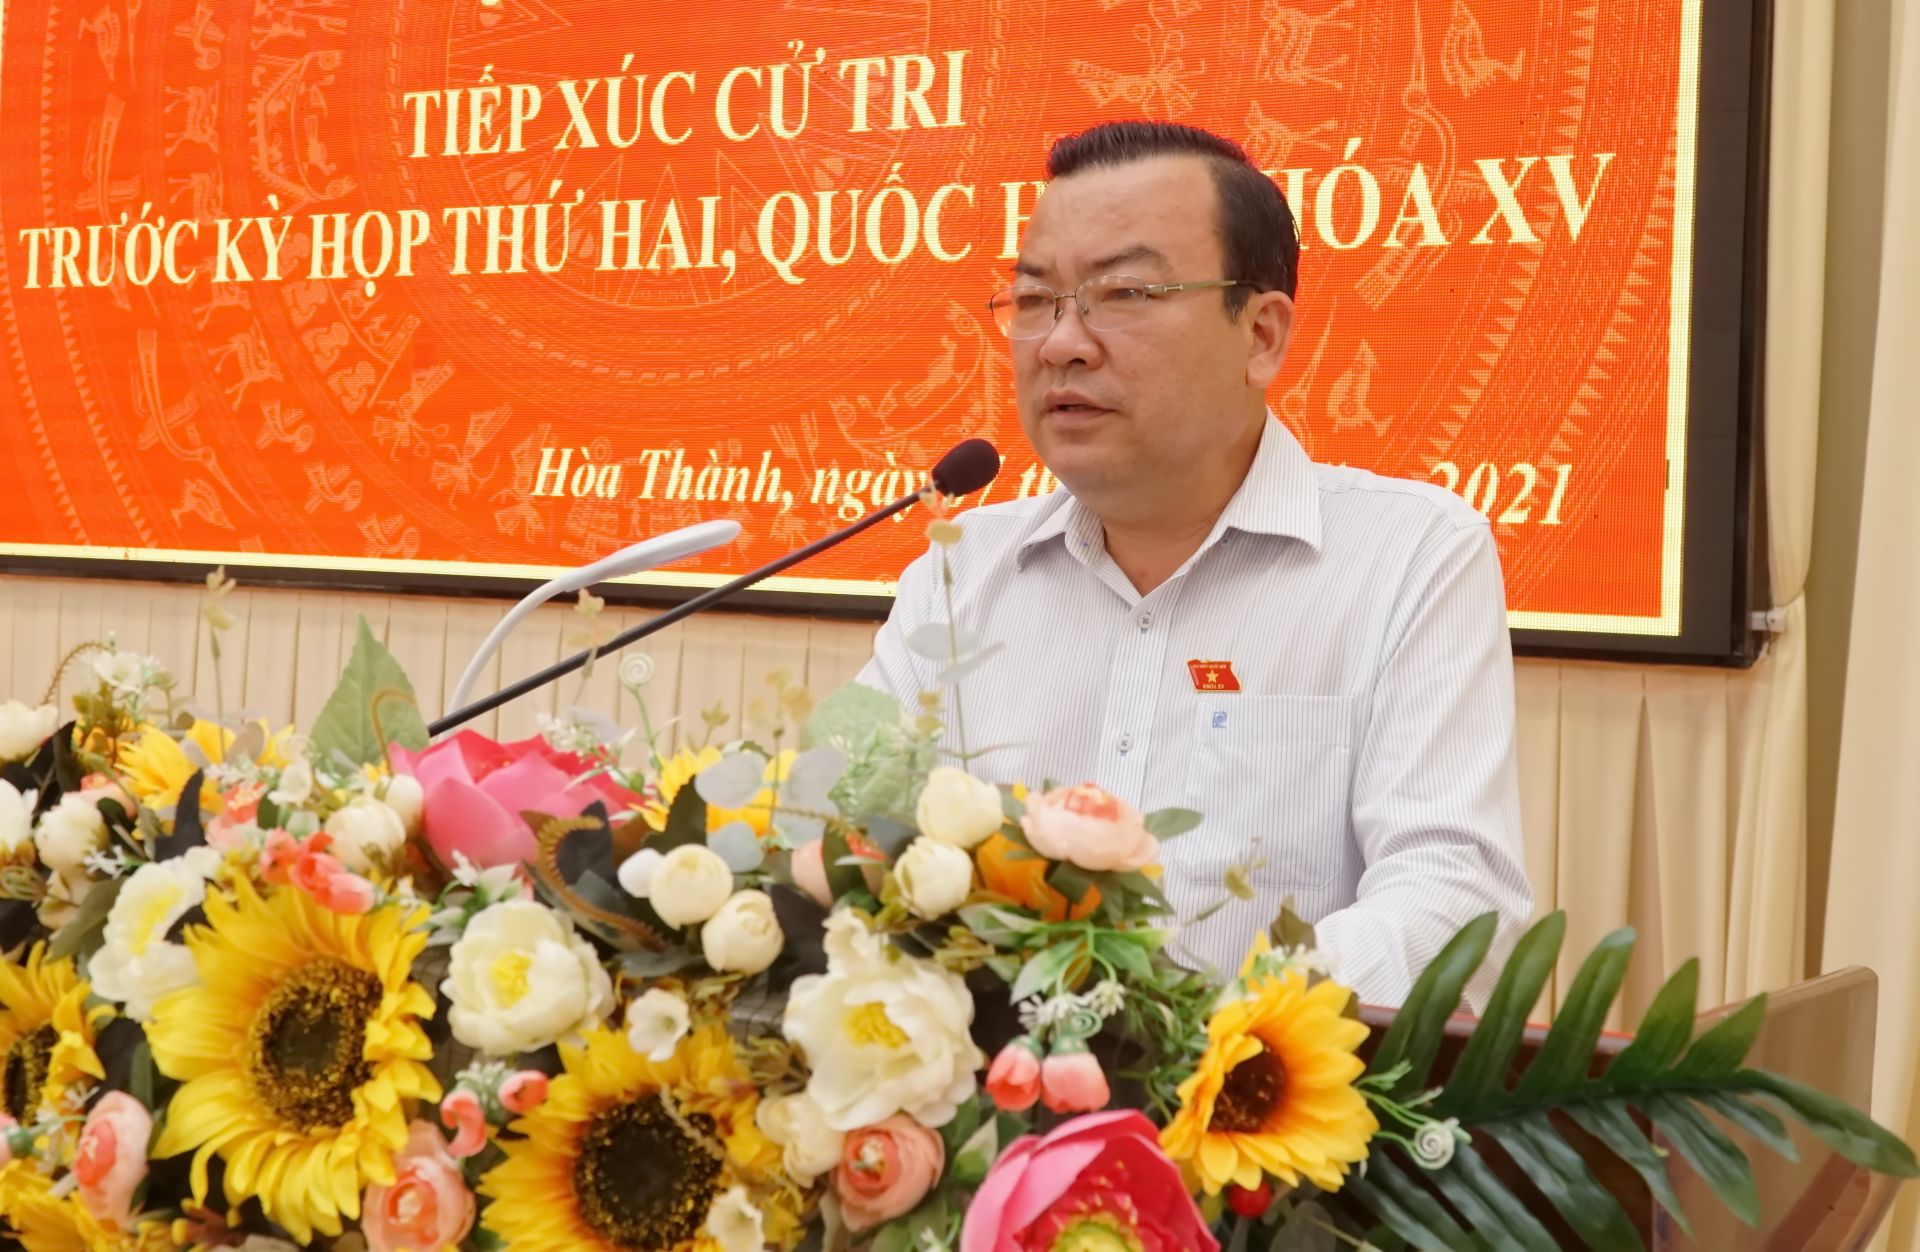 Điểm báo in Tây Ninh ngày 08.10.2021